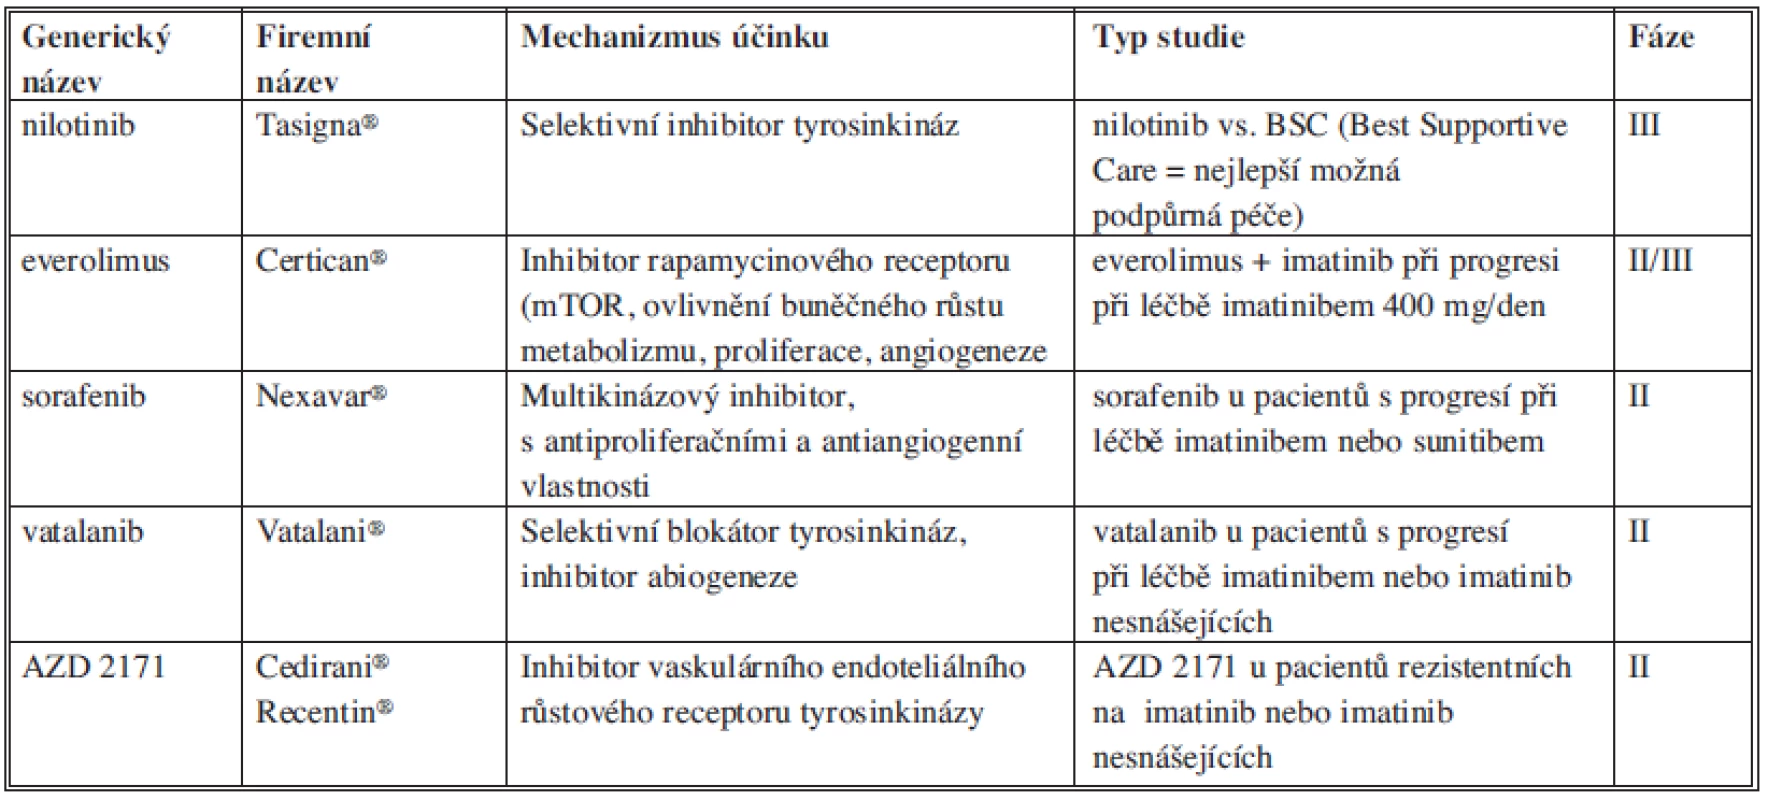 Přehled léčebných možností po selhání léčby imatinibem a sunitinibem
Tab. 1: Overview of treatment options that might follow imatinib and sunitib failure